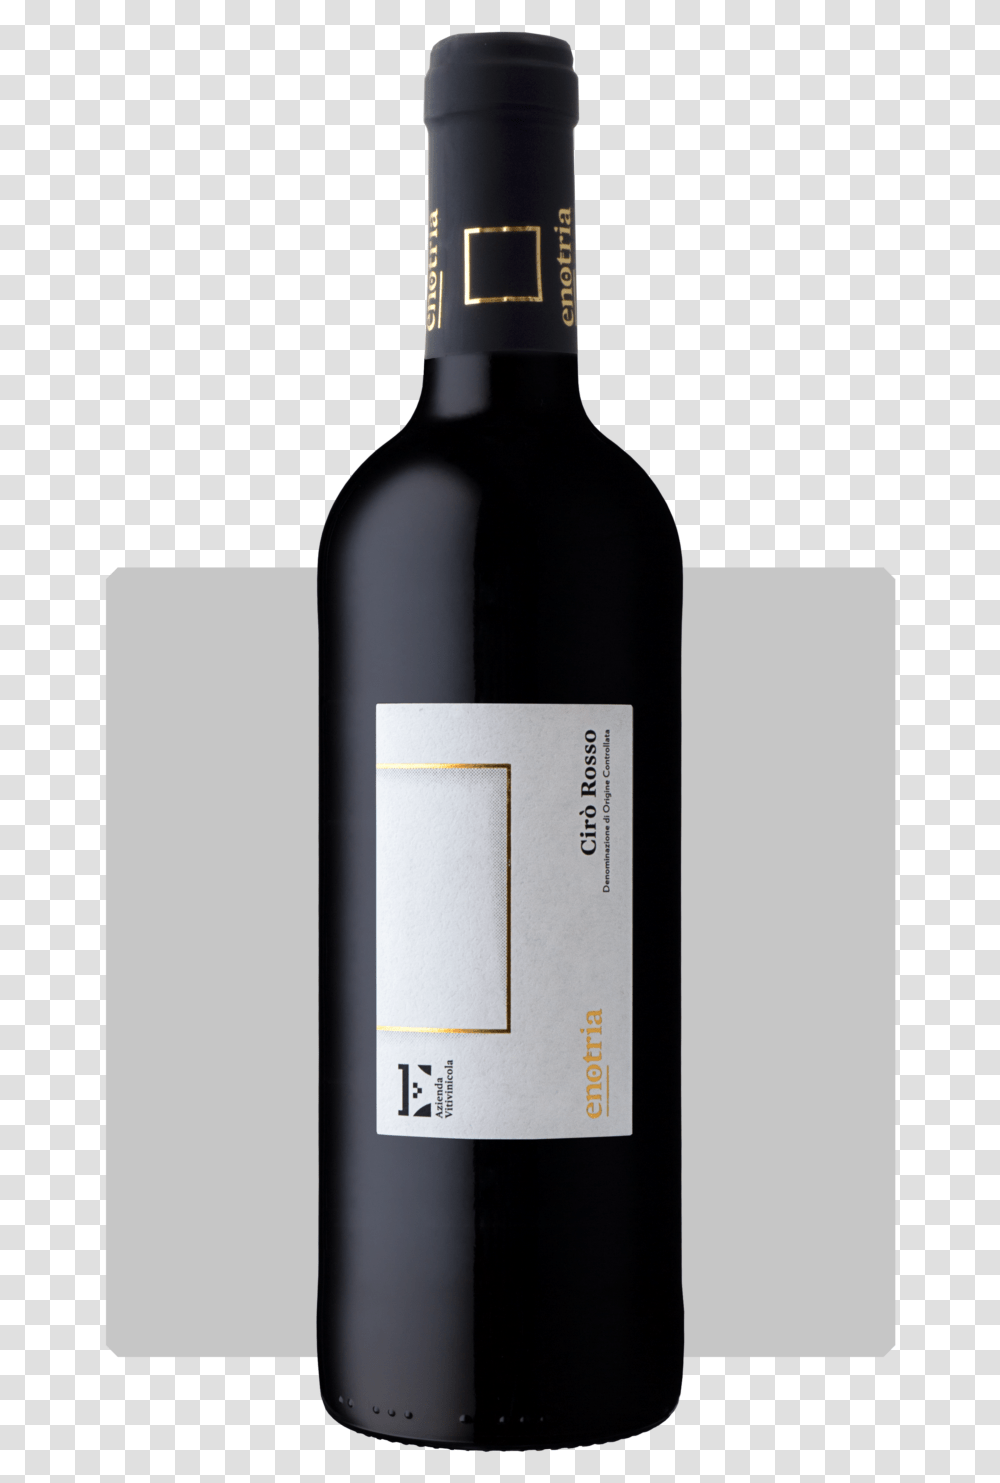 Wine Bottle Download Wine Bottle, Beverage, Drink, Alcohol, Red Wine Transparent Png